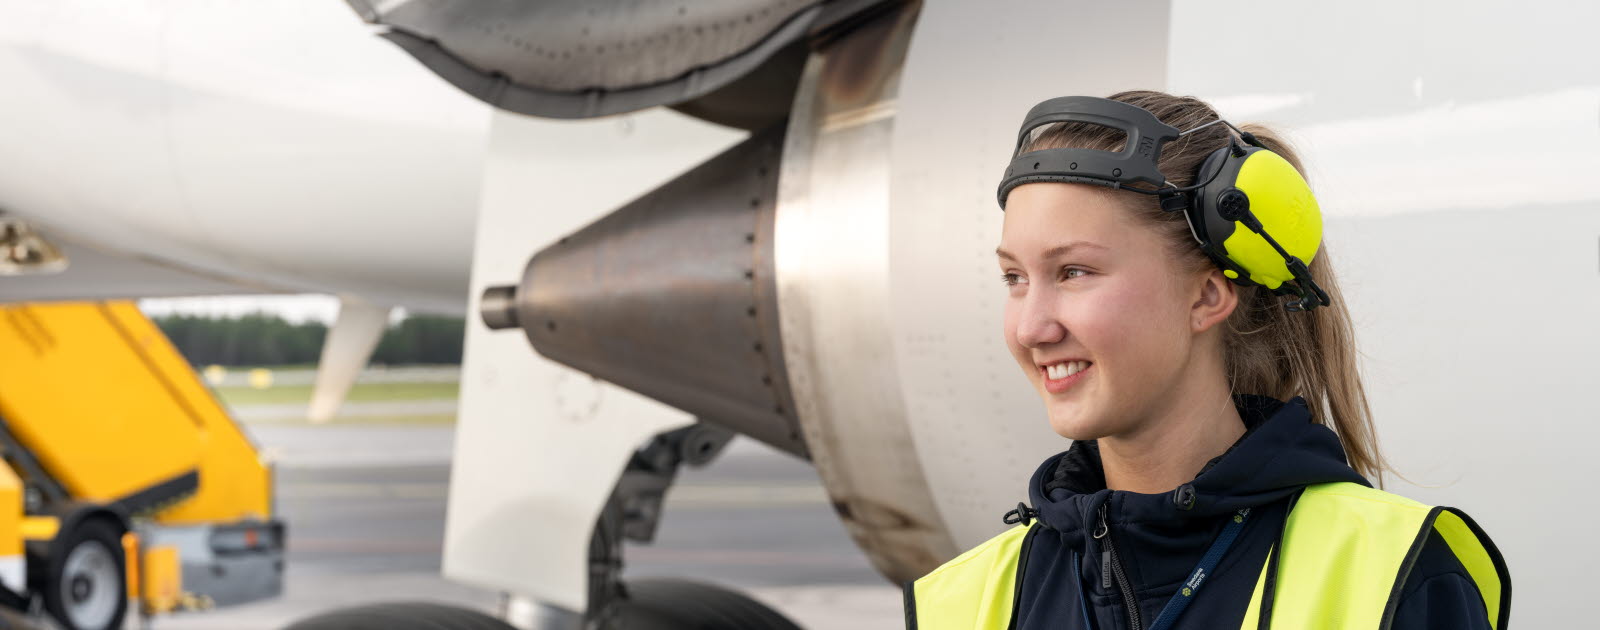 En kvinnlig medarbetare framför en flygplansmotor